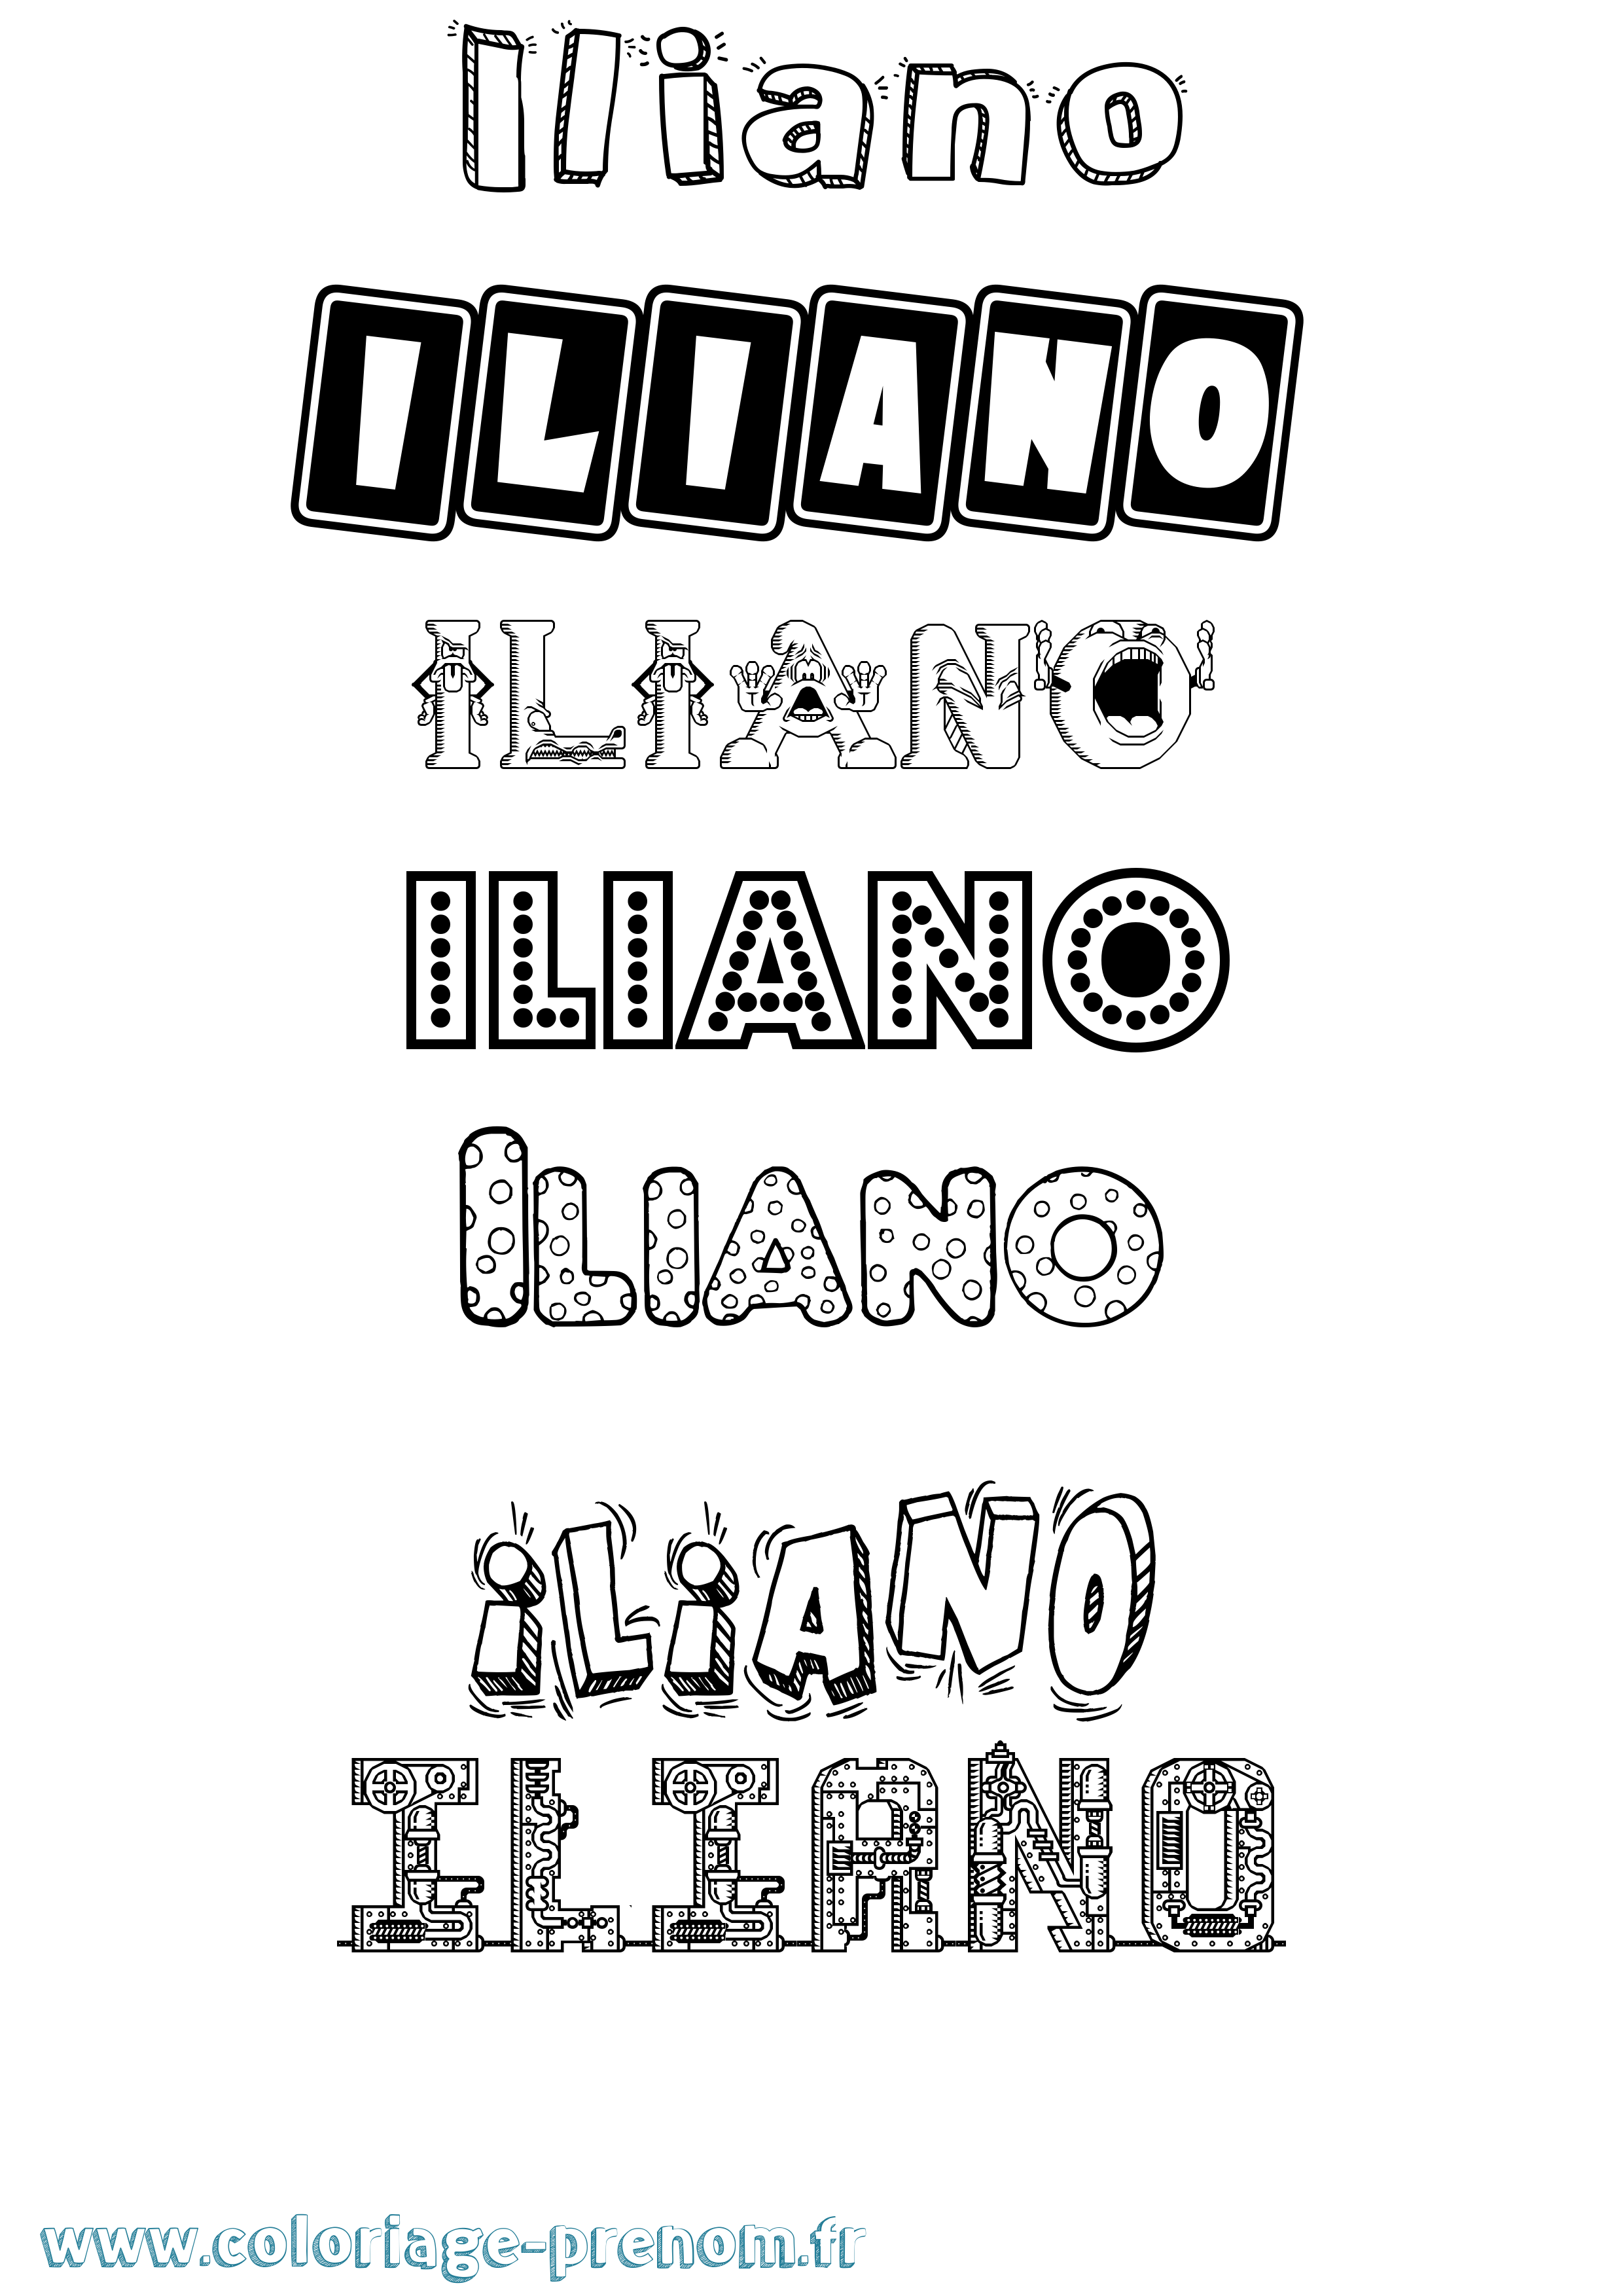 Coloriage prénom Iliano Fun